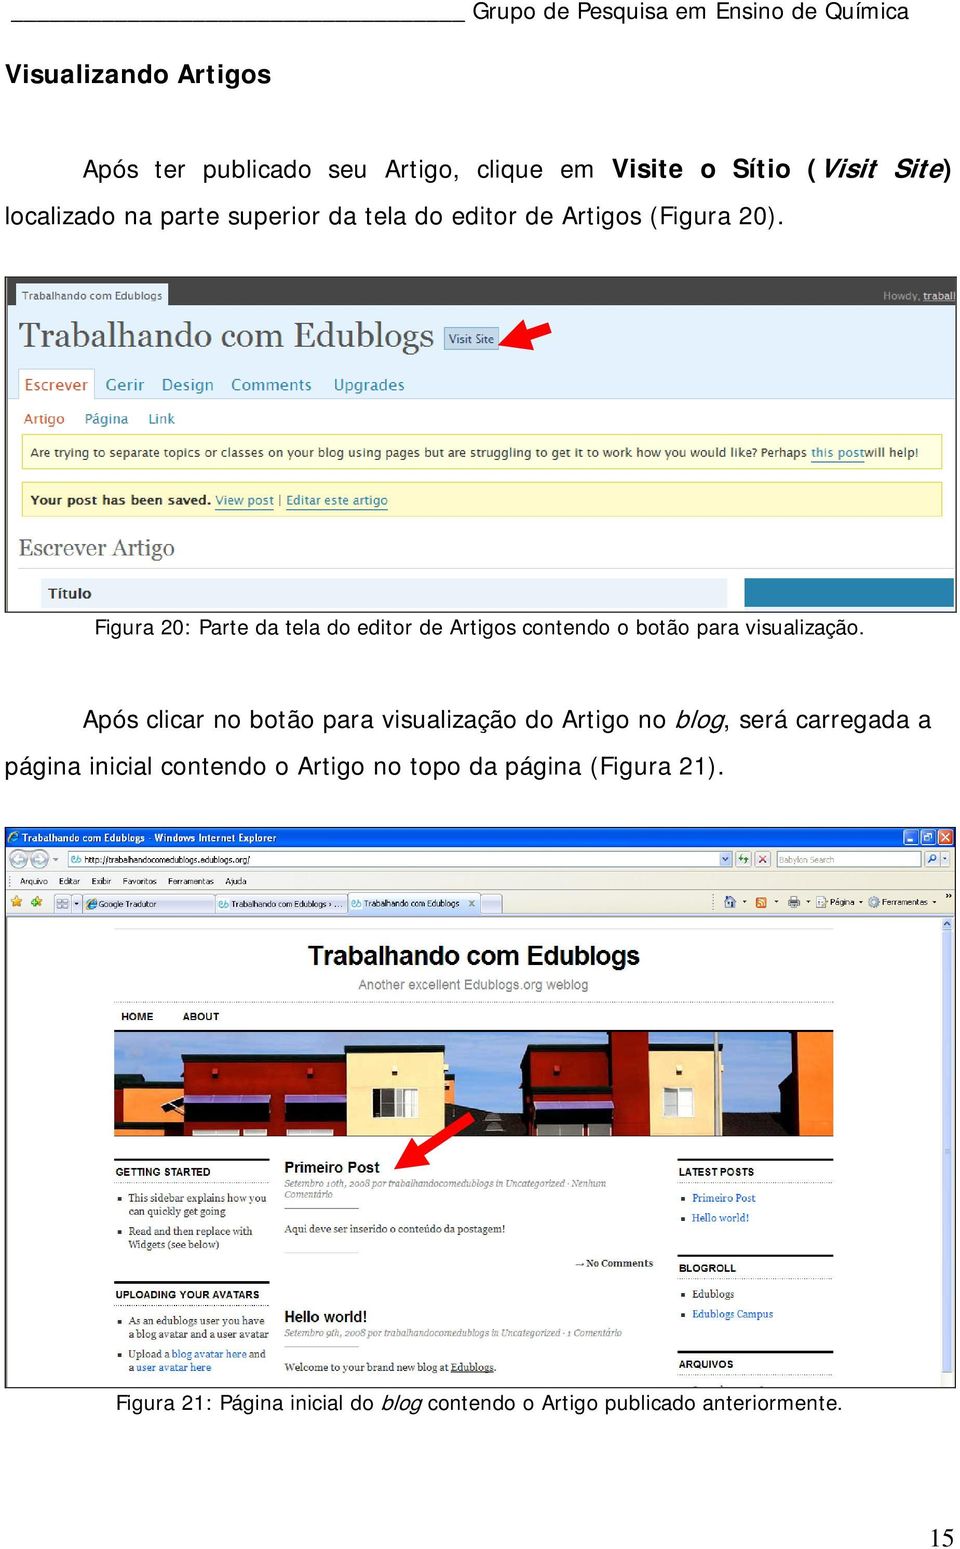 Figura 20: Parte da tela do editor de Artigos contendo o botão para visualização.